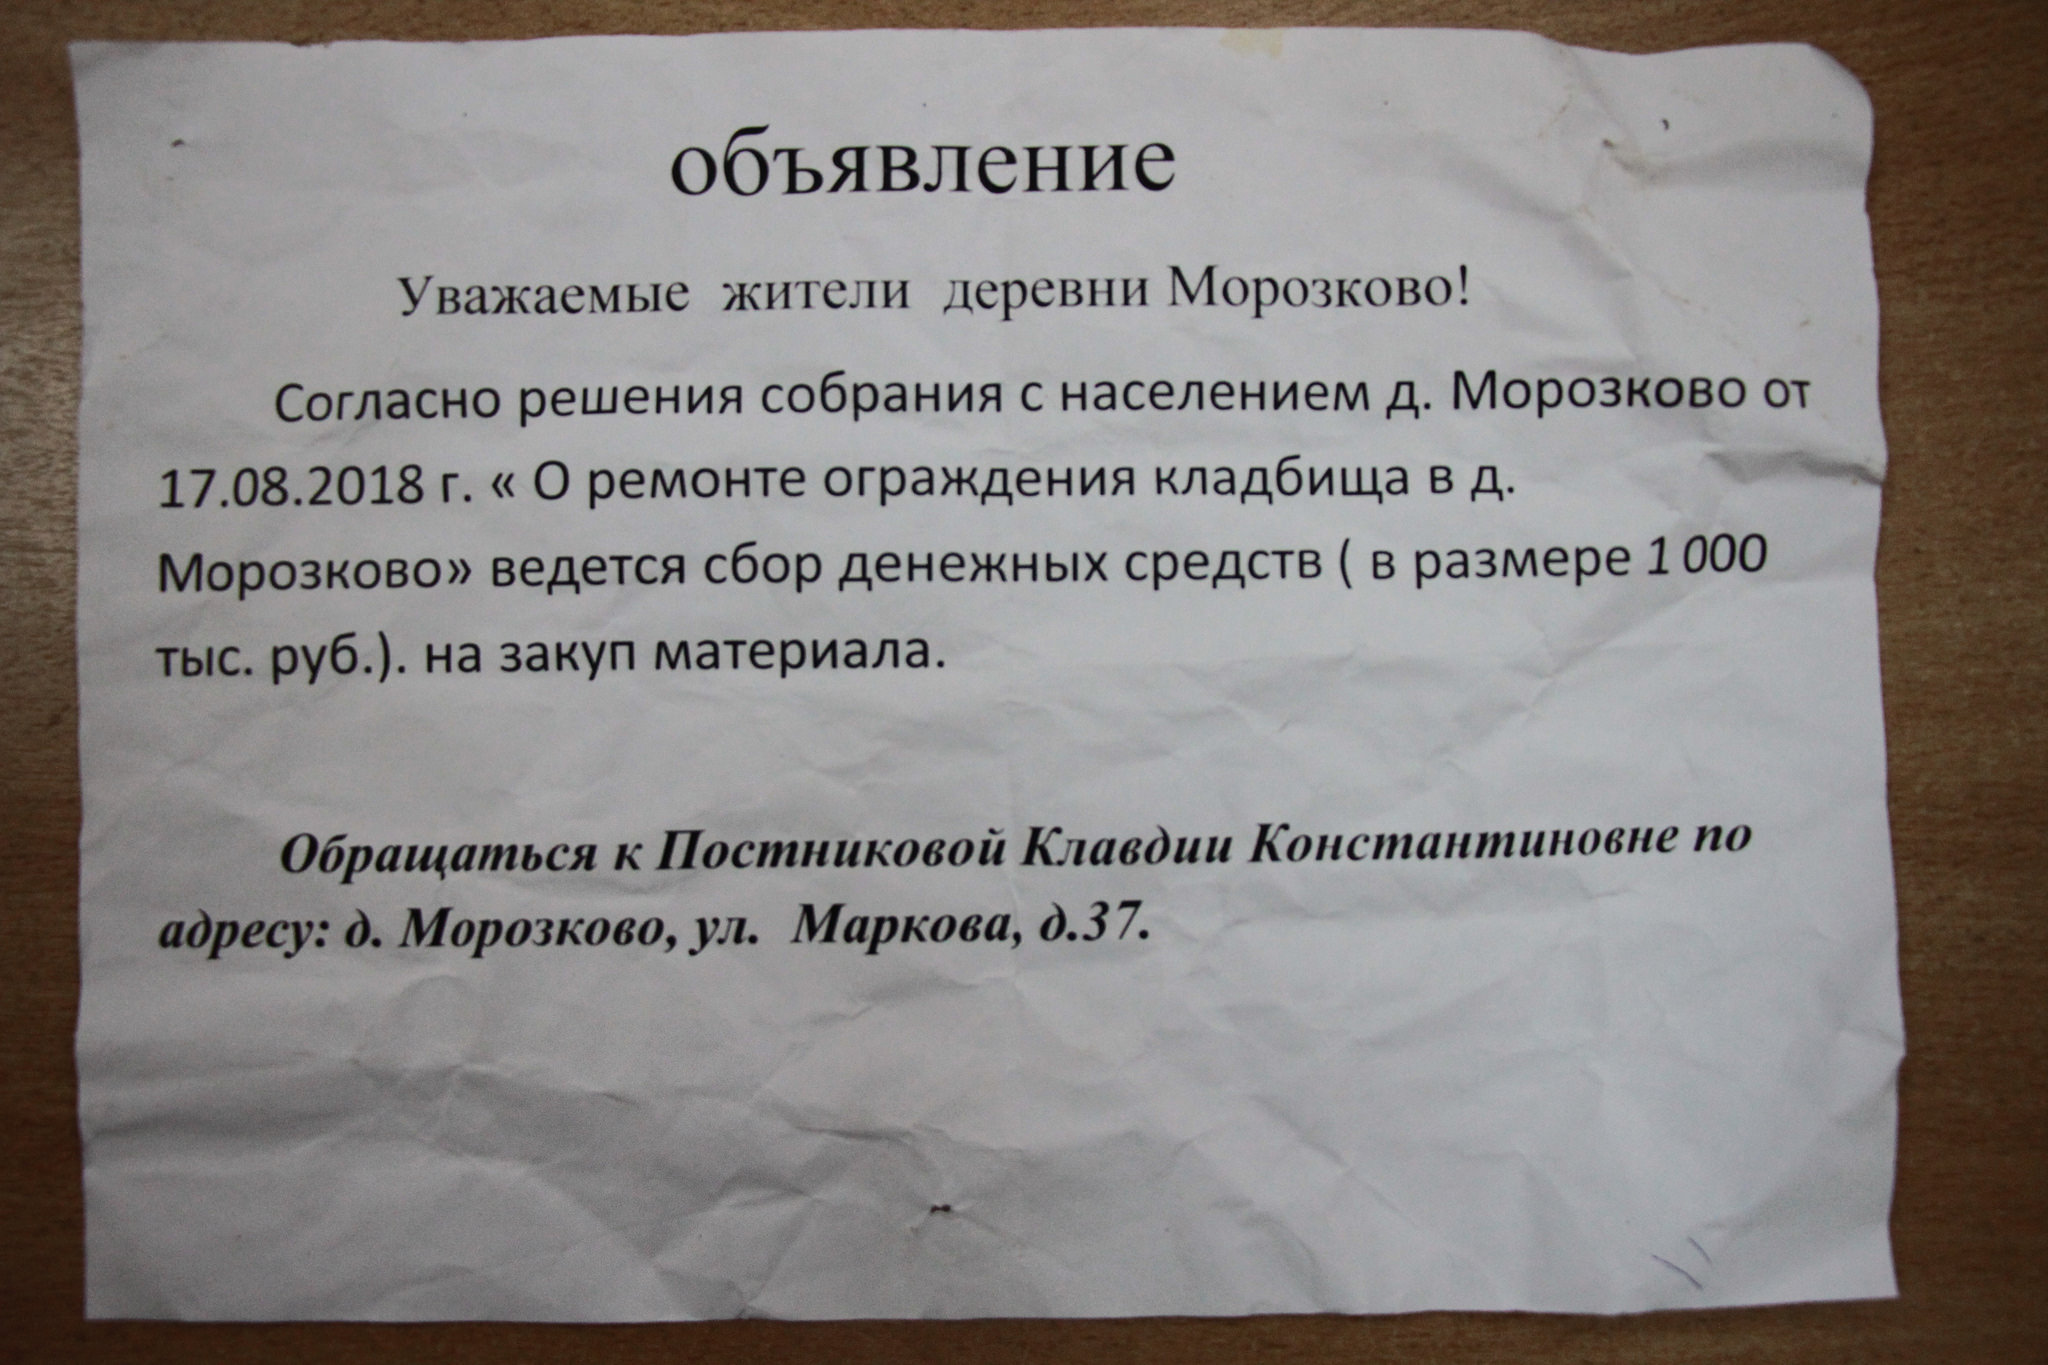 Жители Морозково обратились к главе Серова за помощью с ремонтом кладбищенской ограды